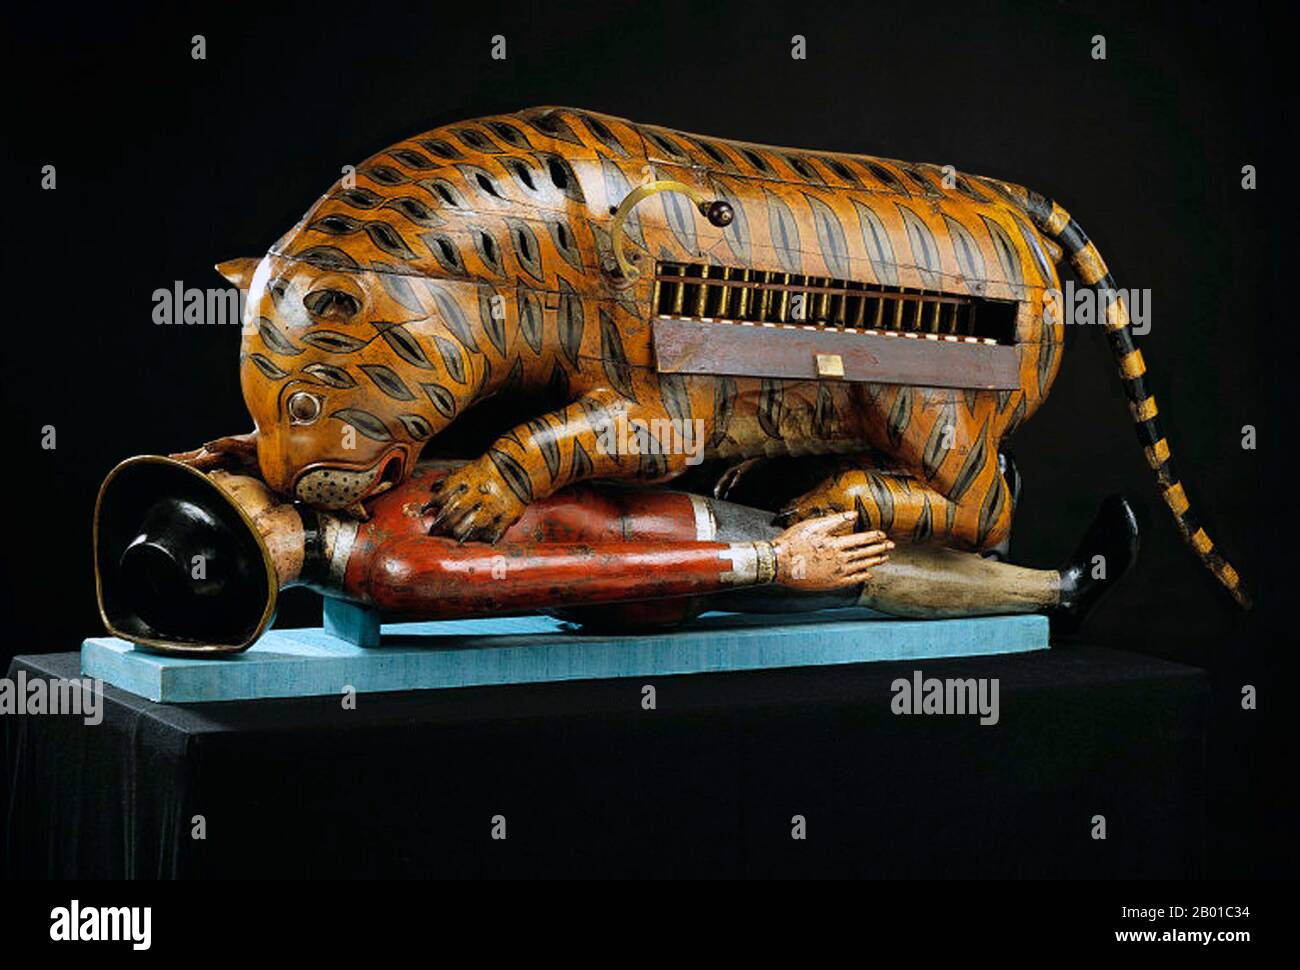 Indien: Tipu Sultans mechanischer Tiger zermalmt einen britischen Soldaten, Mysore, c. 1790. Foto von Victoria and Albert Museum (CC BY-SA 3,0 Lizenz). Tipus Tiger gehörte zu Tipu Sultan, Herrscher von Mysore (r. 1782-1799). Der fast lebensgroße hölzerne Automat stellt einen Tiger dar, der eine niedergestülpte Figur in europäischer Kleidung zermalmt. Im Körper des Tigers befindet sich ein Organ. Wenn ein Griff gedreht wird, spielt das Organ und der Arm des Opfers steigt und fällt. Der Tiger wurde von den Briten nach der Belagerung von Seringapatam im Jahr 1799 aus dem Palast in Mysore übernommen. Stockfoto